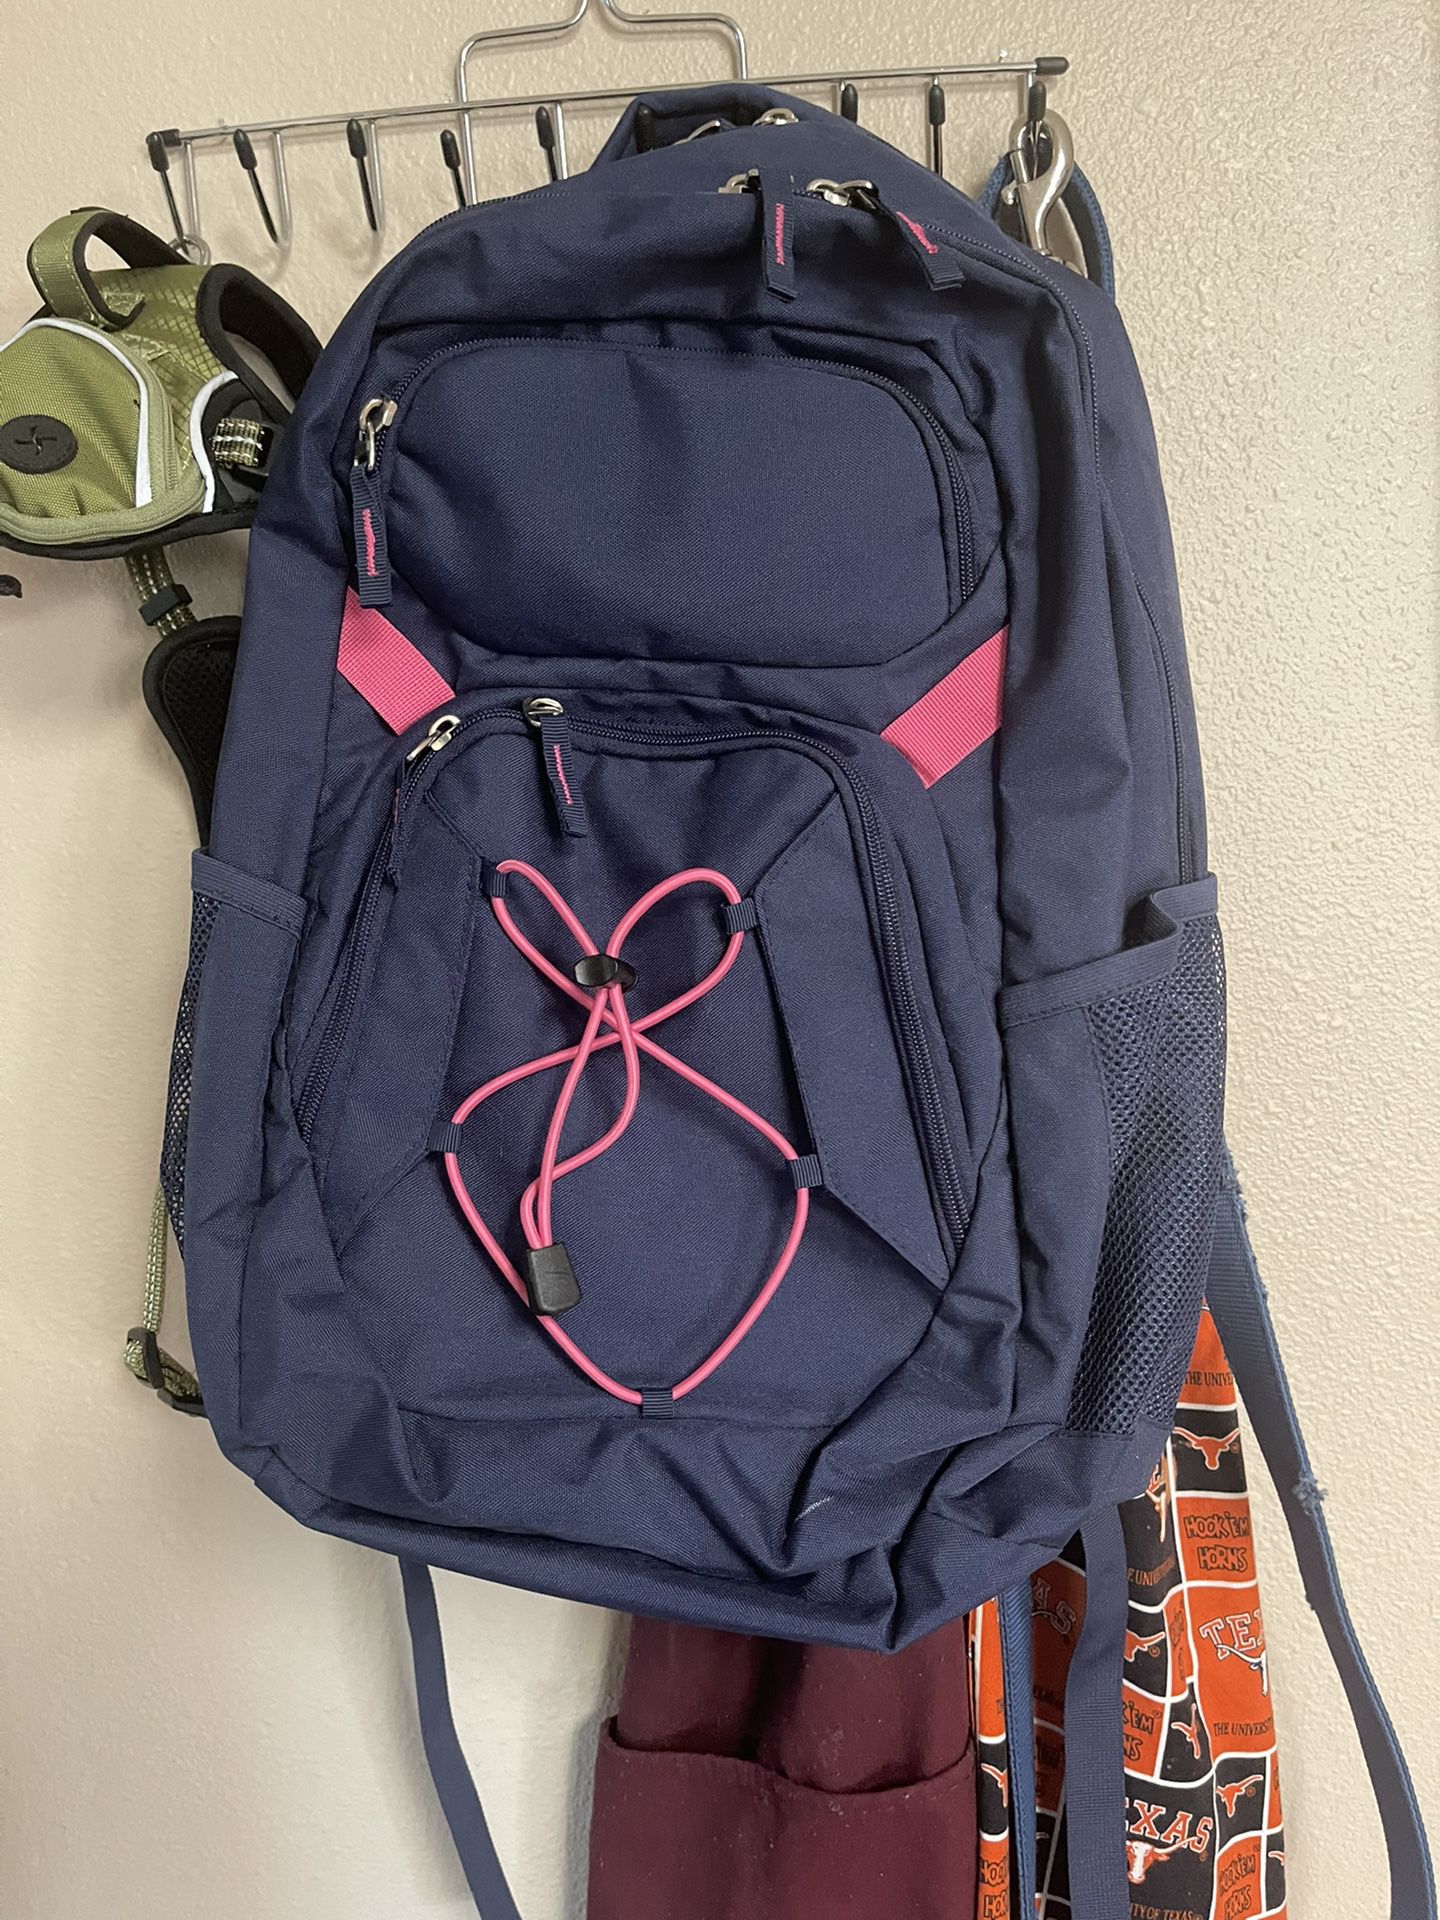 Backpack $25